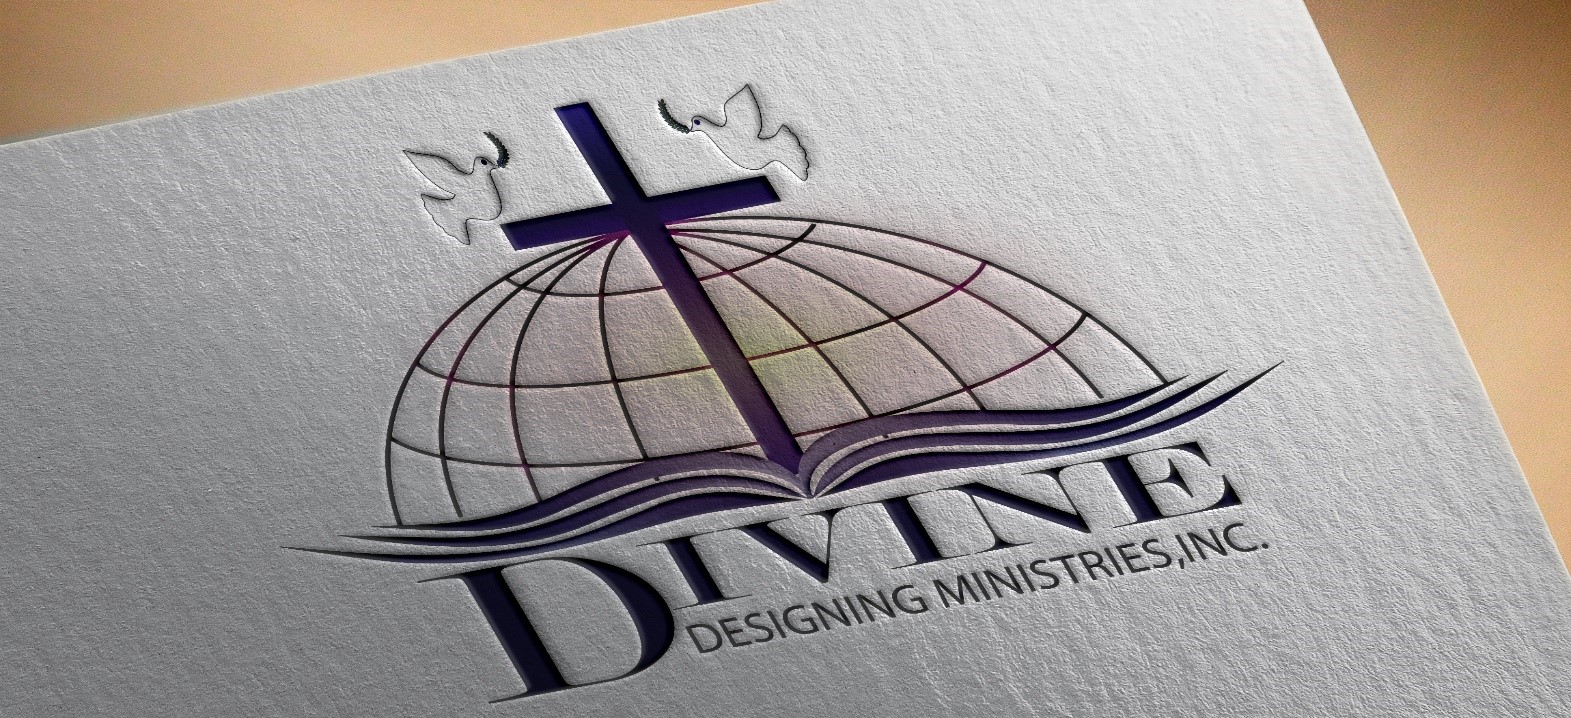 Divine Designing Ministries, Inc. logo